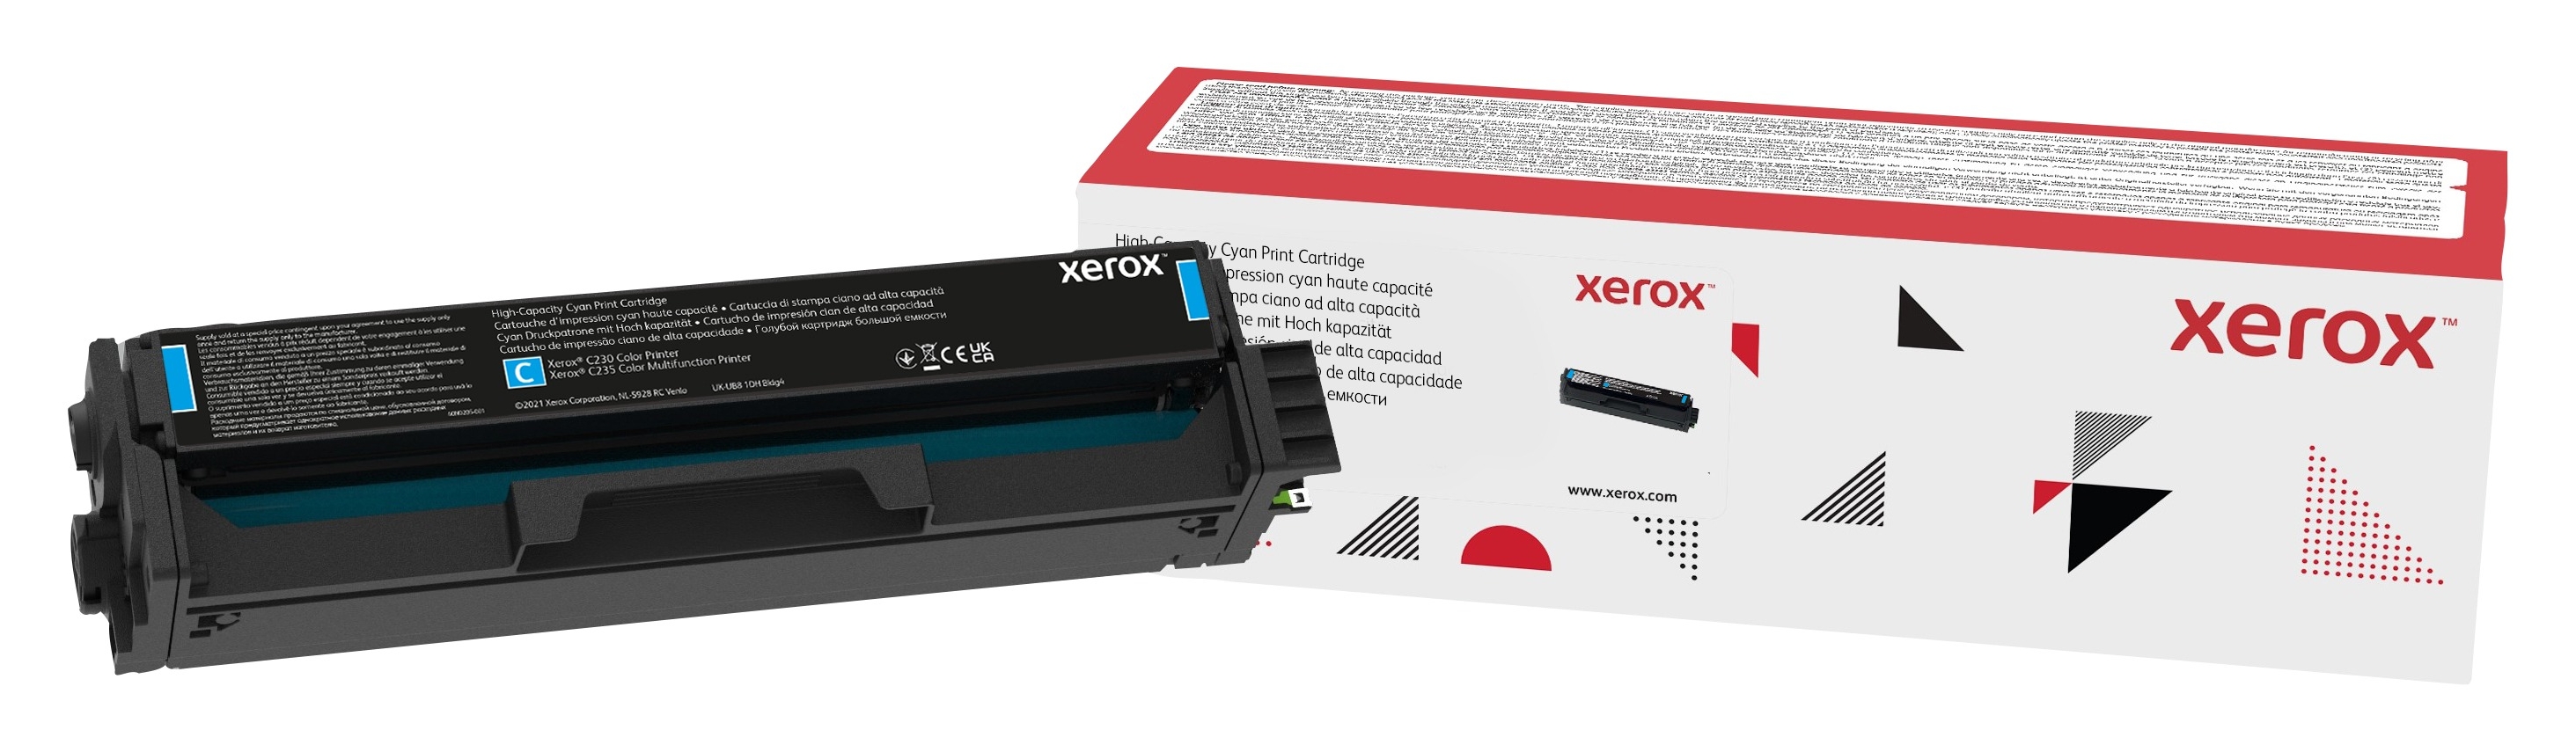 Xerox C230/C235 Cartuccia toner alta capacità ciano (2.500 pagine)  006R04392 Genuine Xerox Supplies